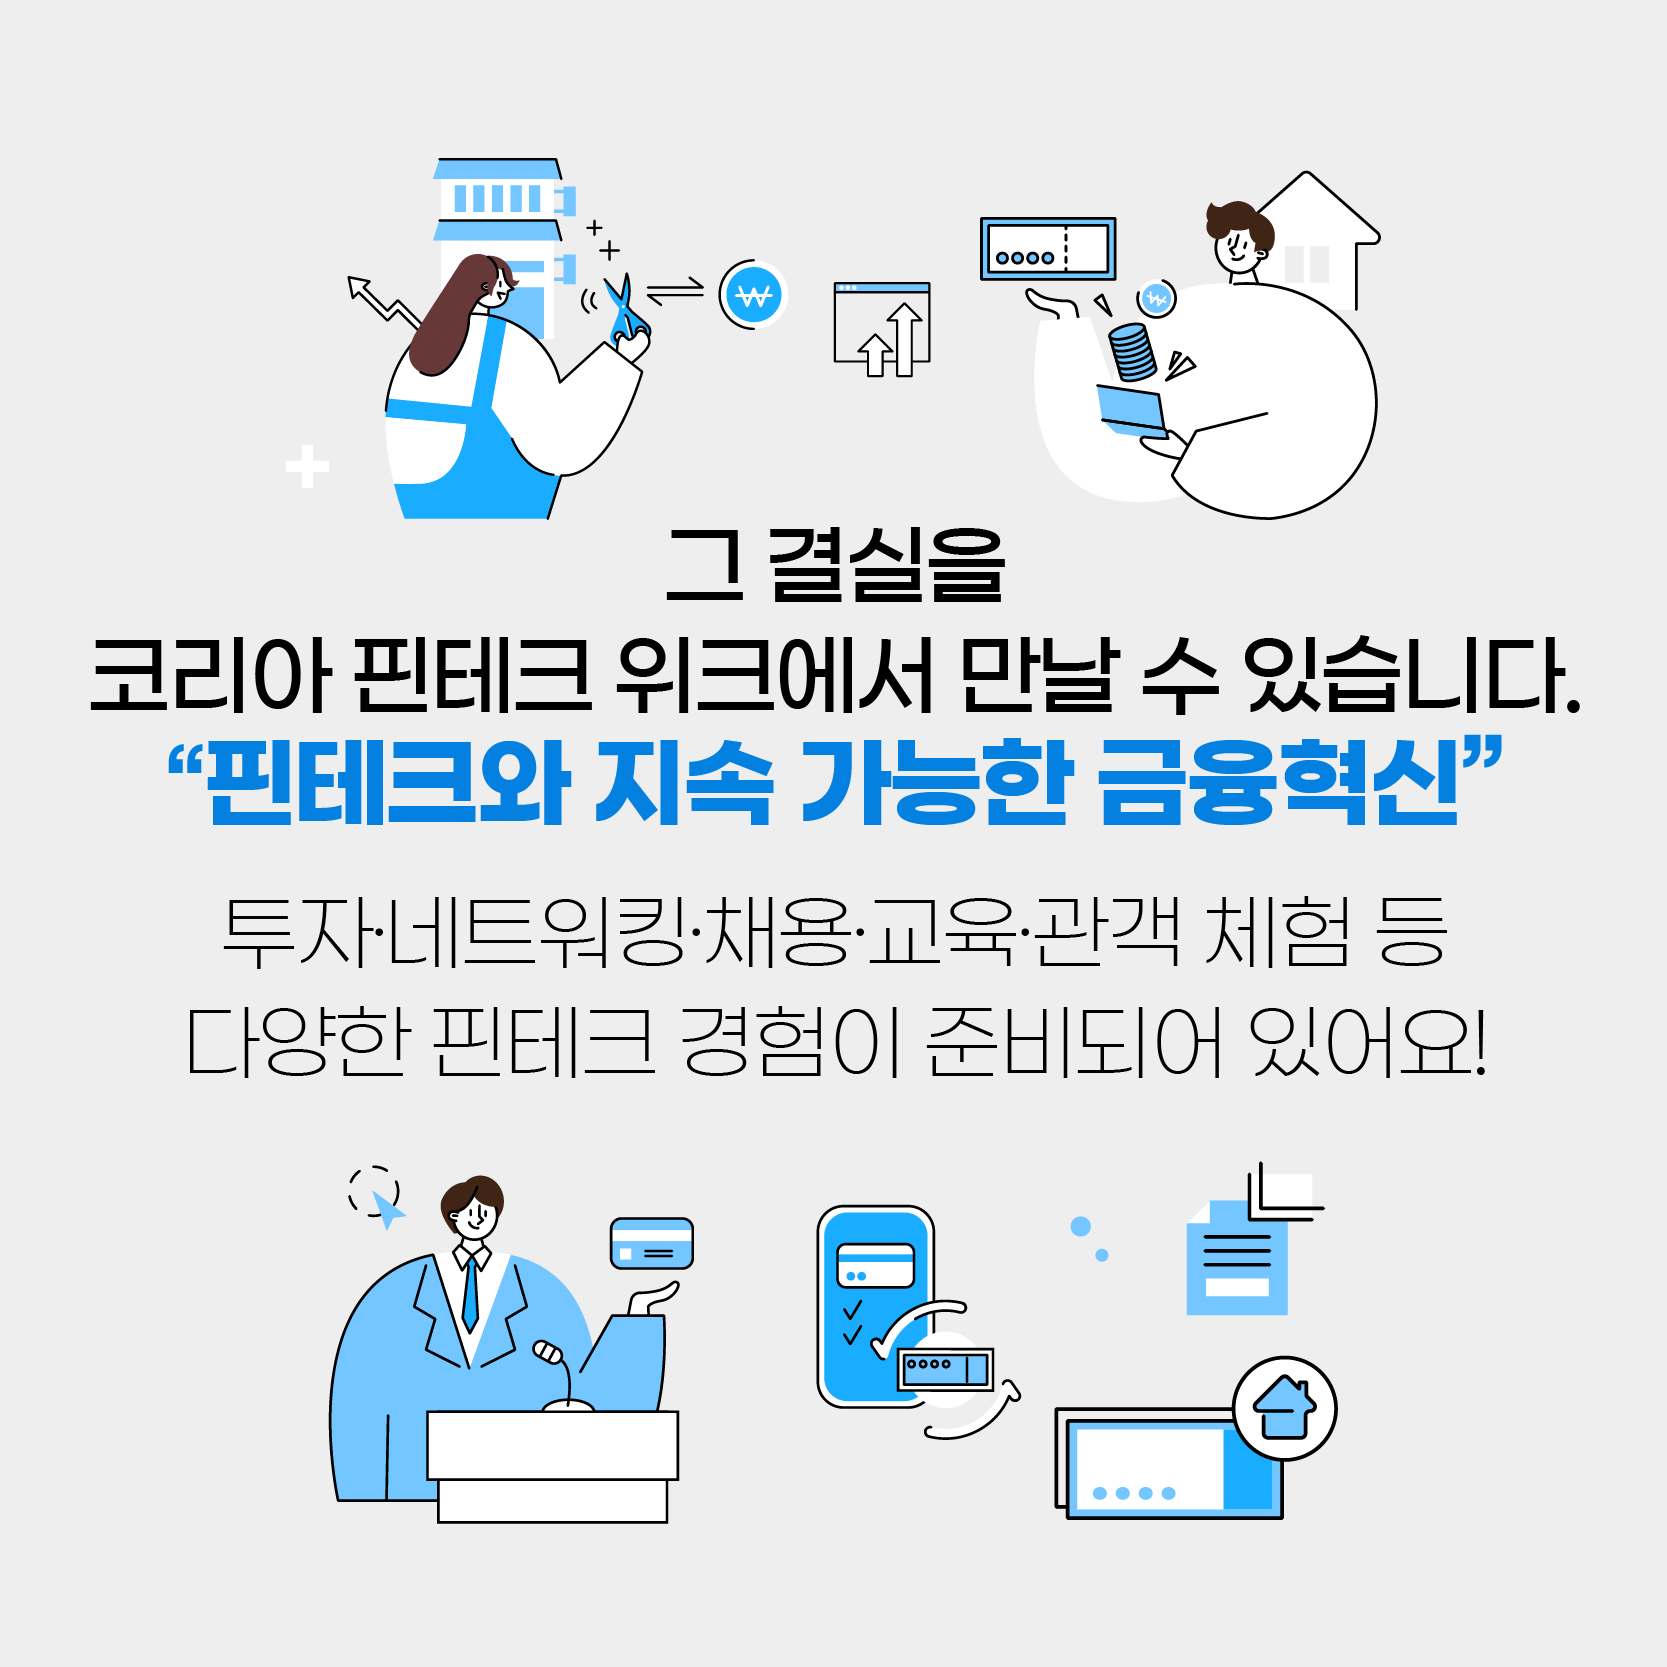 [카드뉴스] 코리아 핀테크 위크 2021, 핀테크 덕후들 온라인으로 모여라!